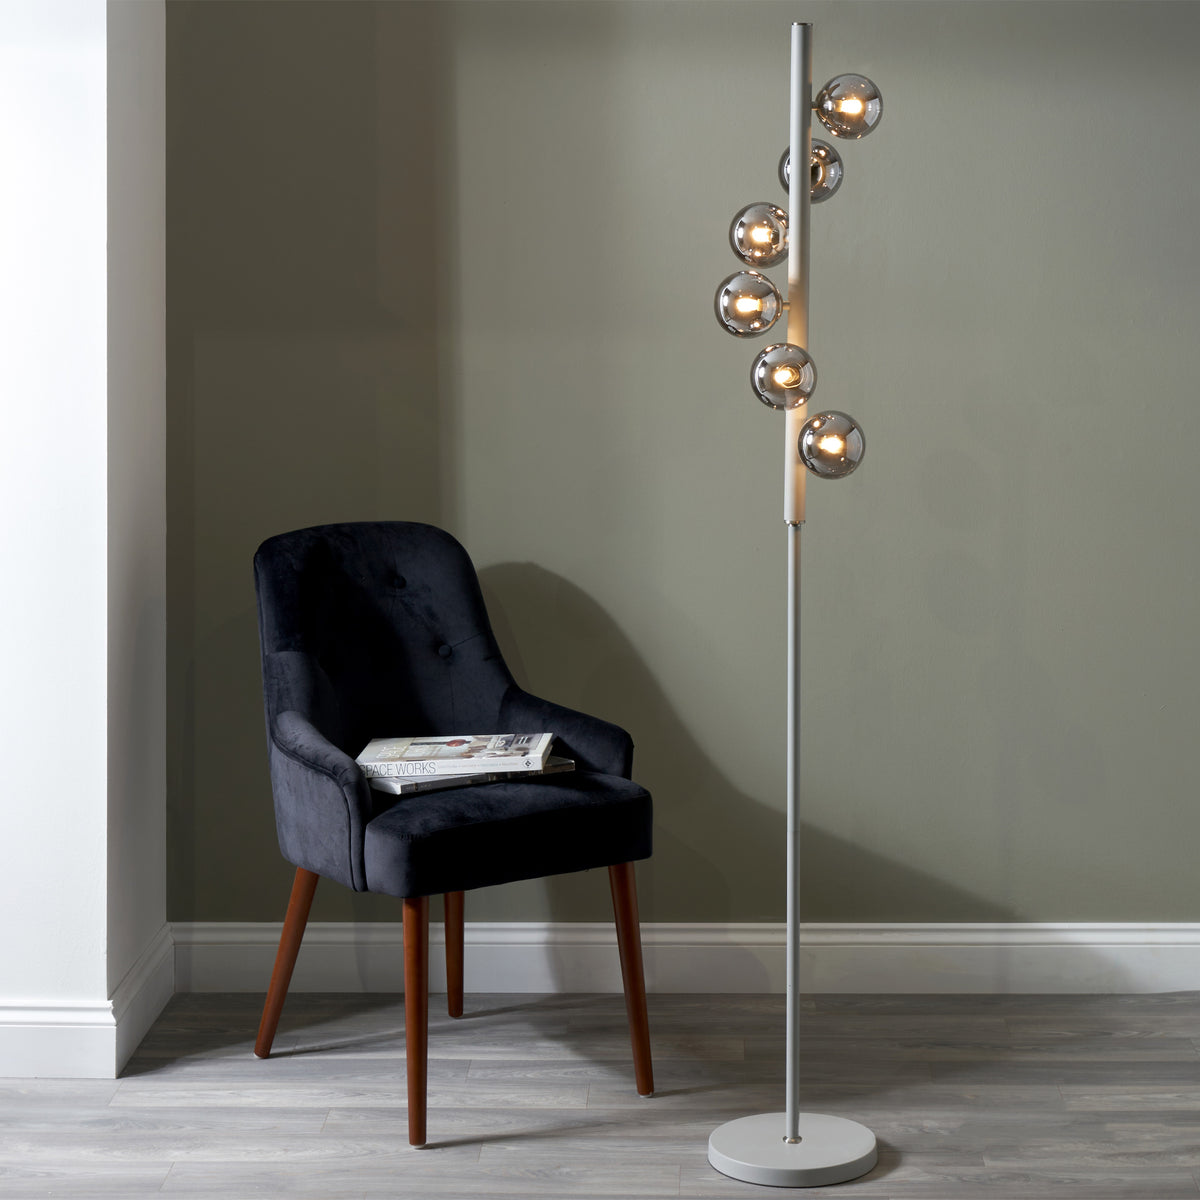 Blair Smoke Glass Ball and Grey Metal Floor Lamp for living room